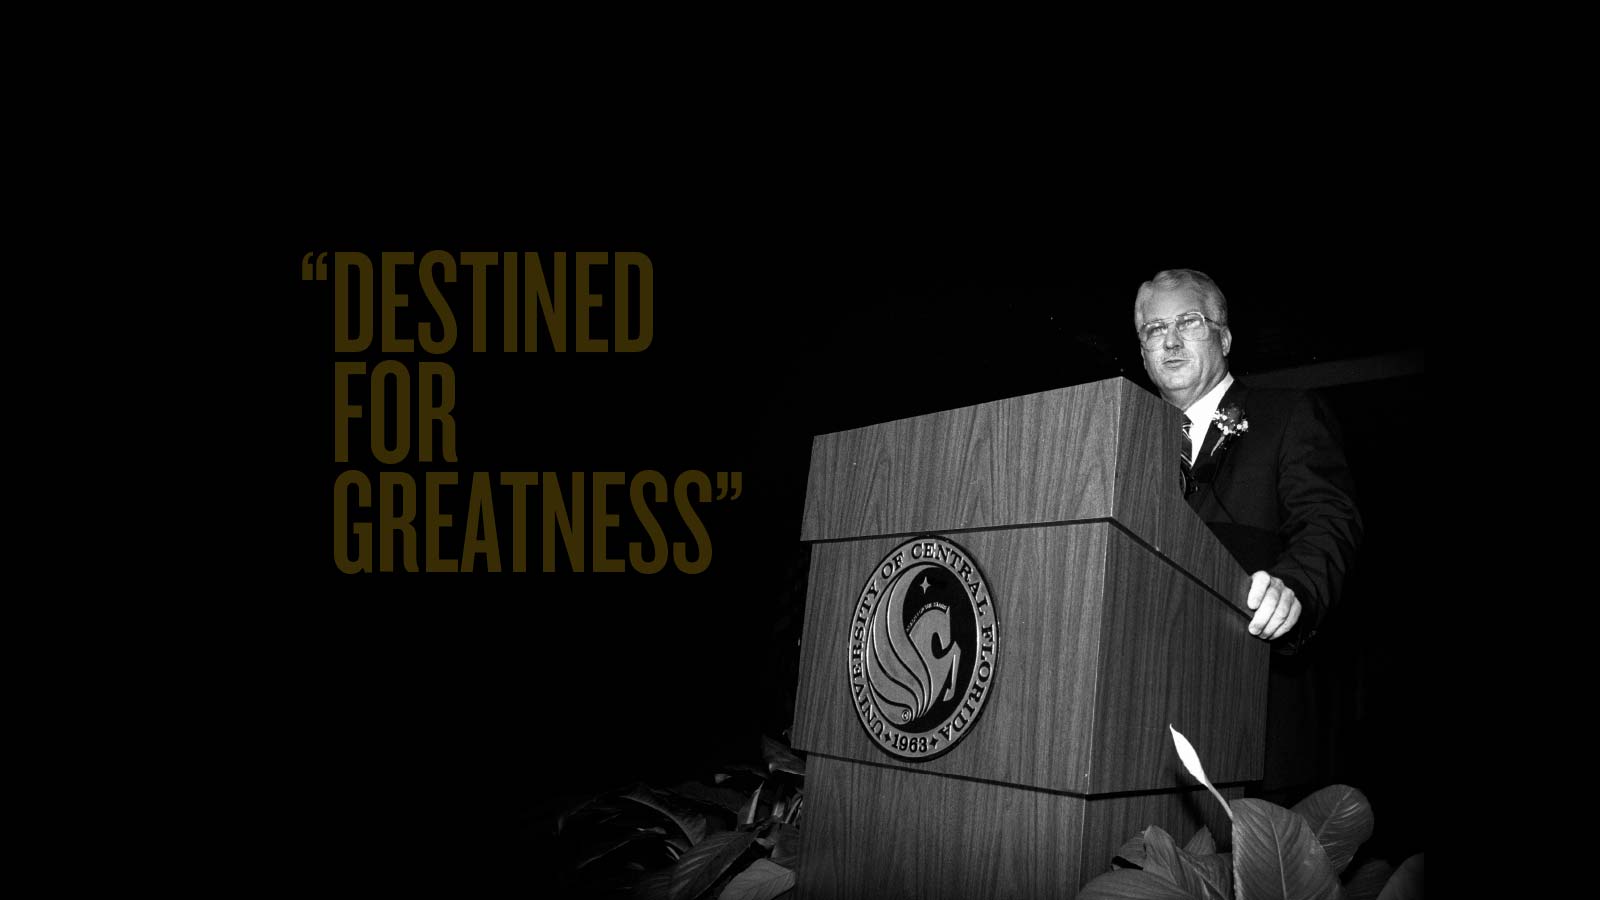 President John C. Hitt’s Inaugural Address